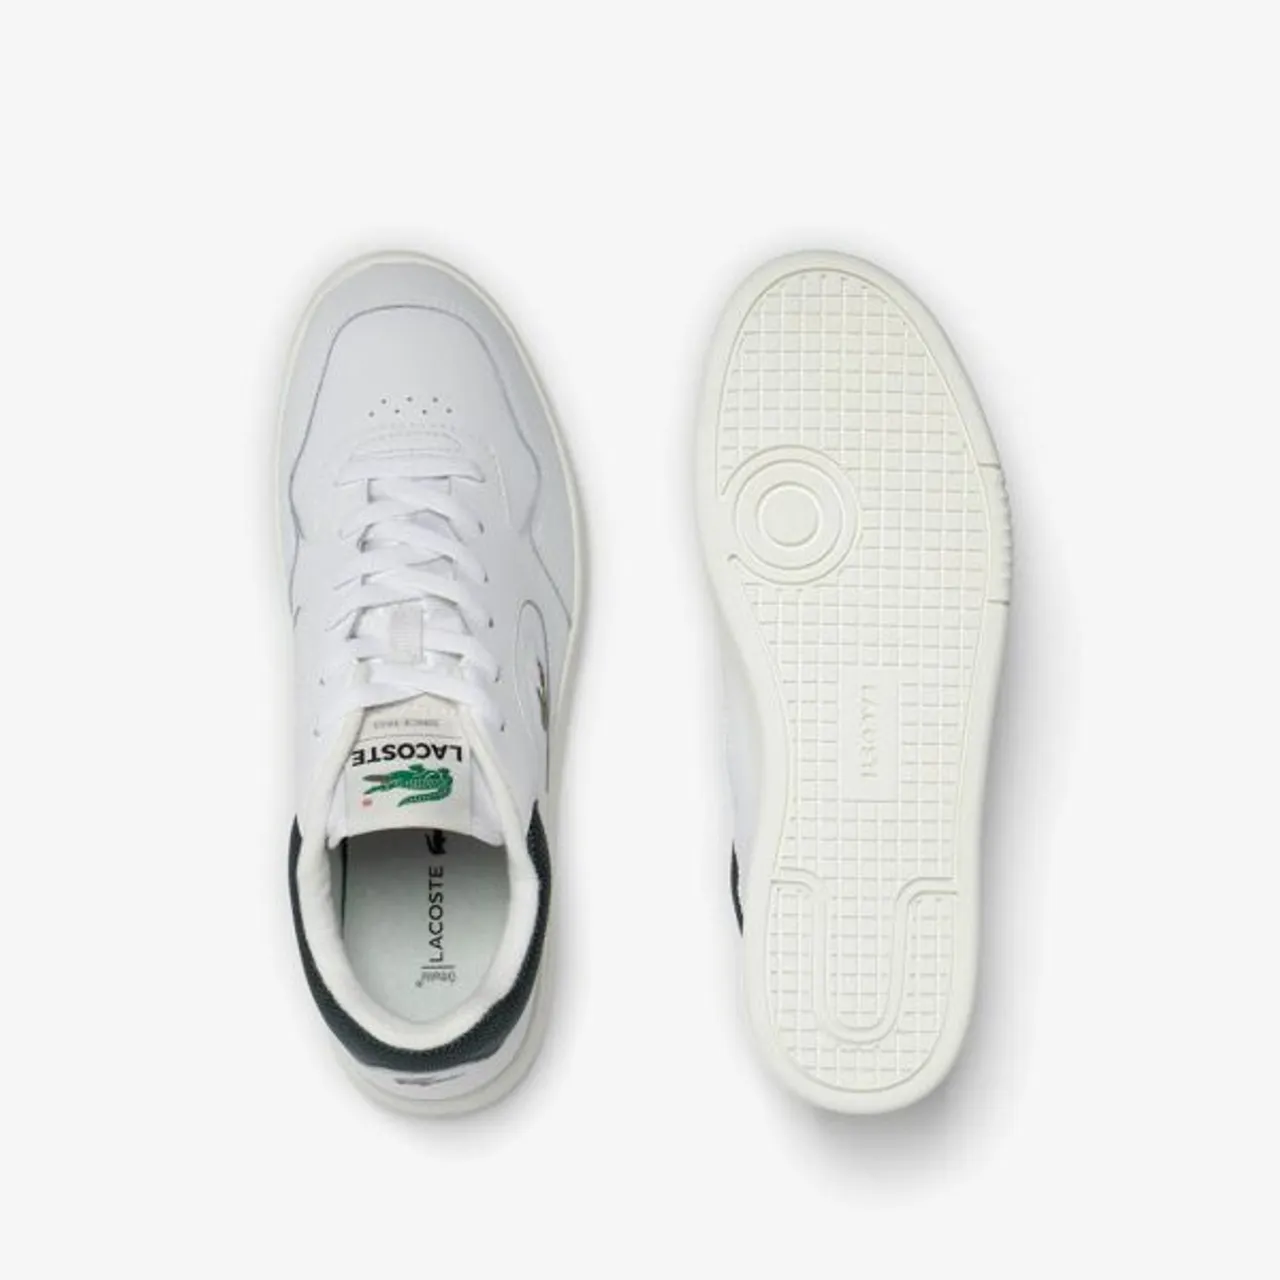 Sneaker LACOSTE "LINESET 223 1 SMA" Gr. 41, grün (weiß, grün) Schuhe Schnürhalbschuhe